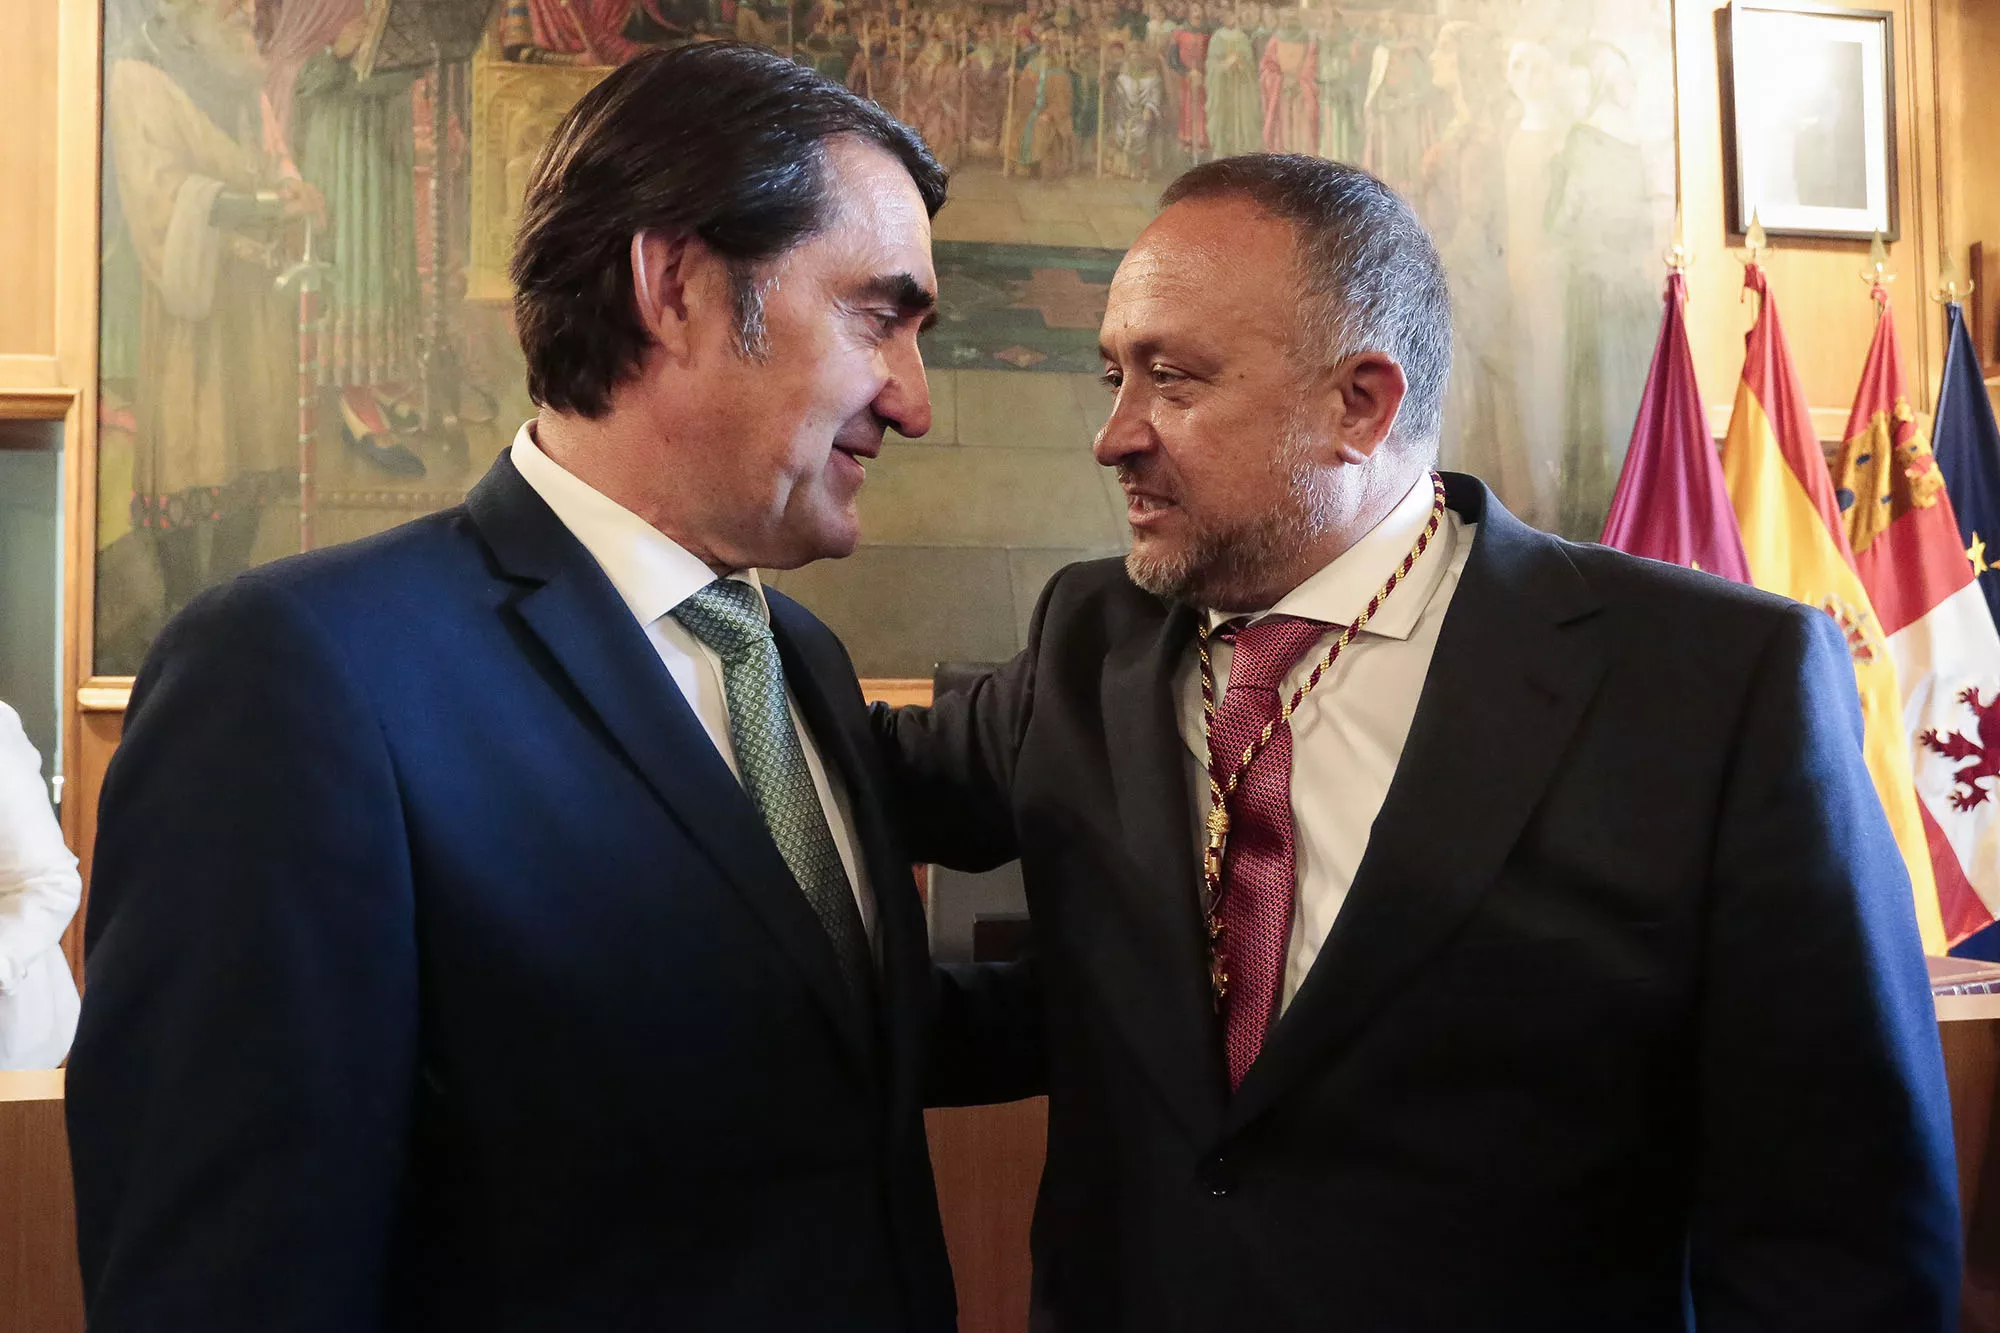 Suarez Quiñones y Álvarez Courel tras el pleno formación de la nueva DIputación de León